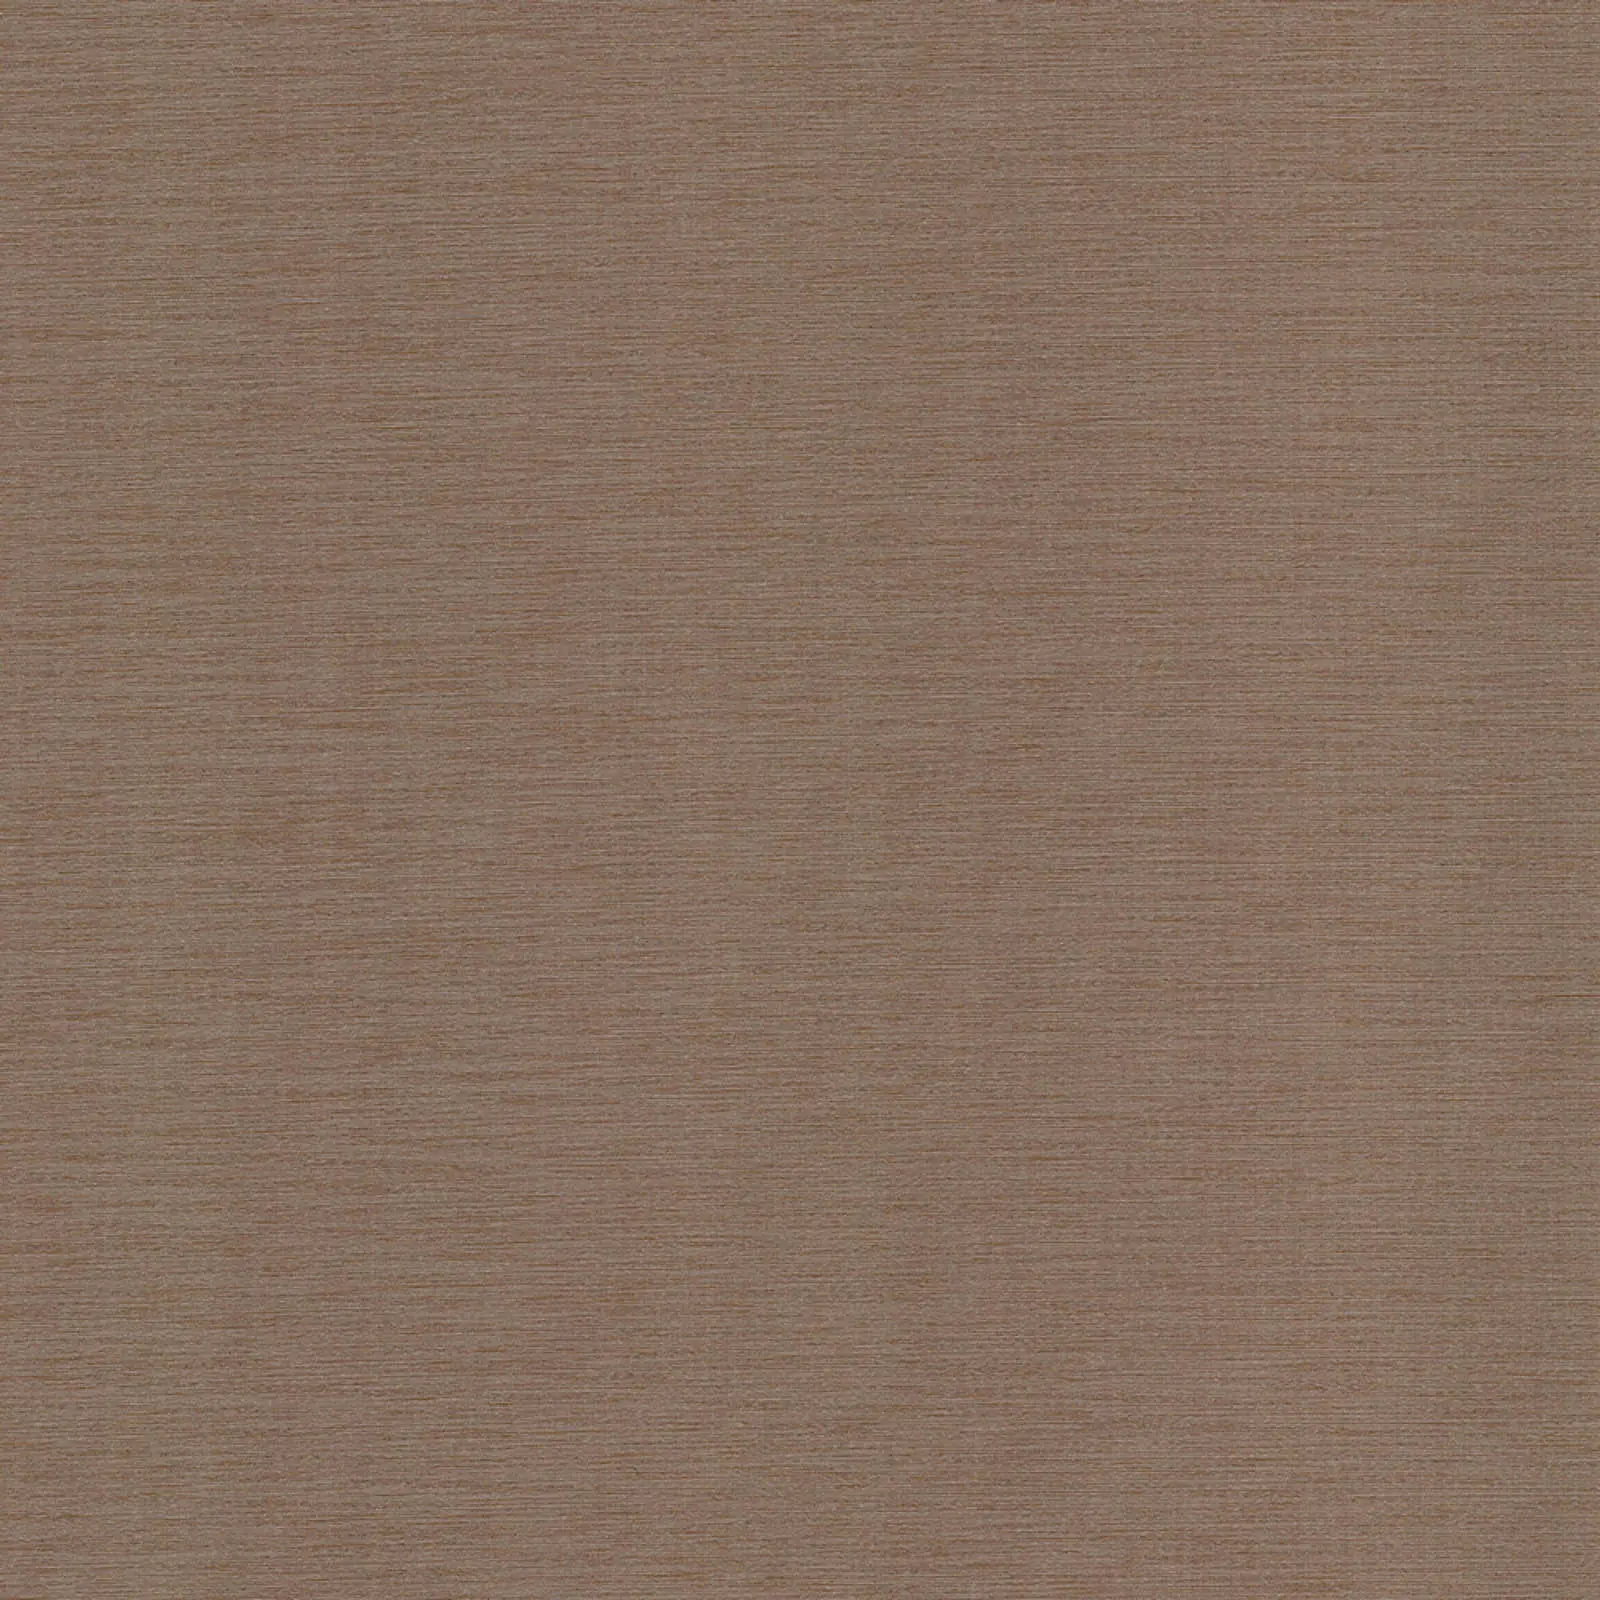 ткань Рулонные шторы Мини Порто-перл_Int коричневый